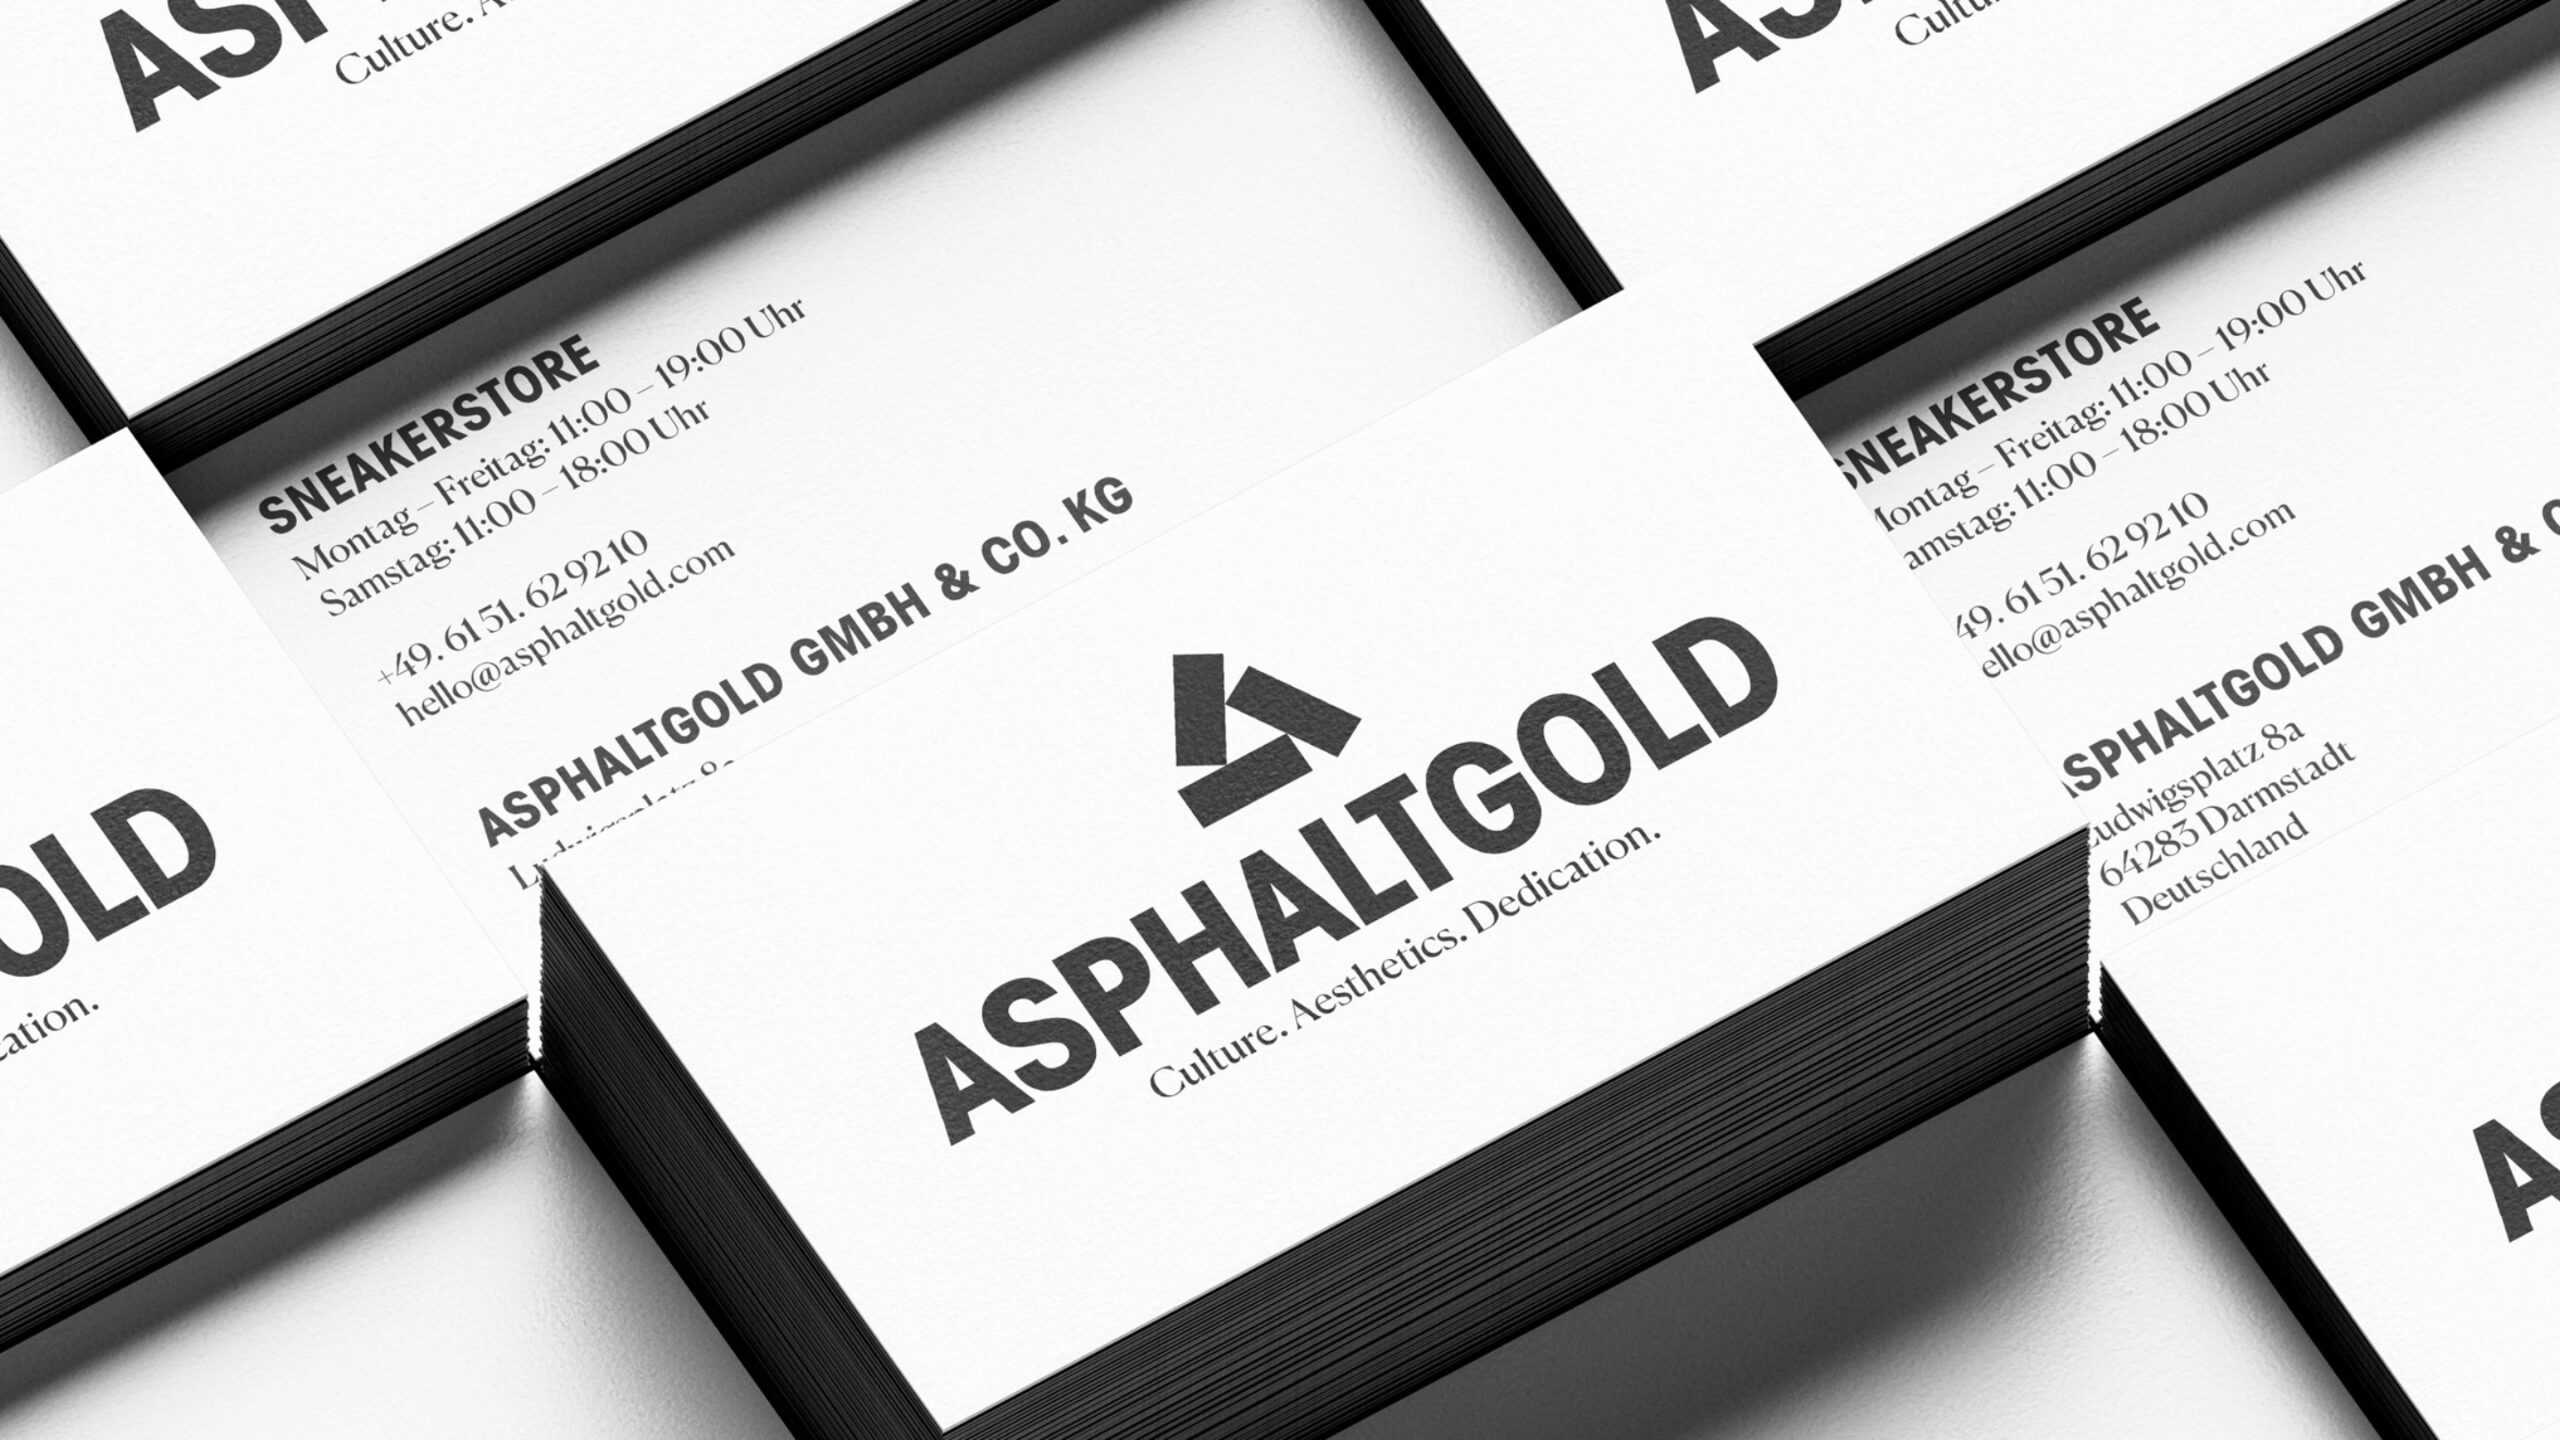 Mockup of Asphaltgold business cards